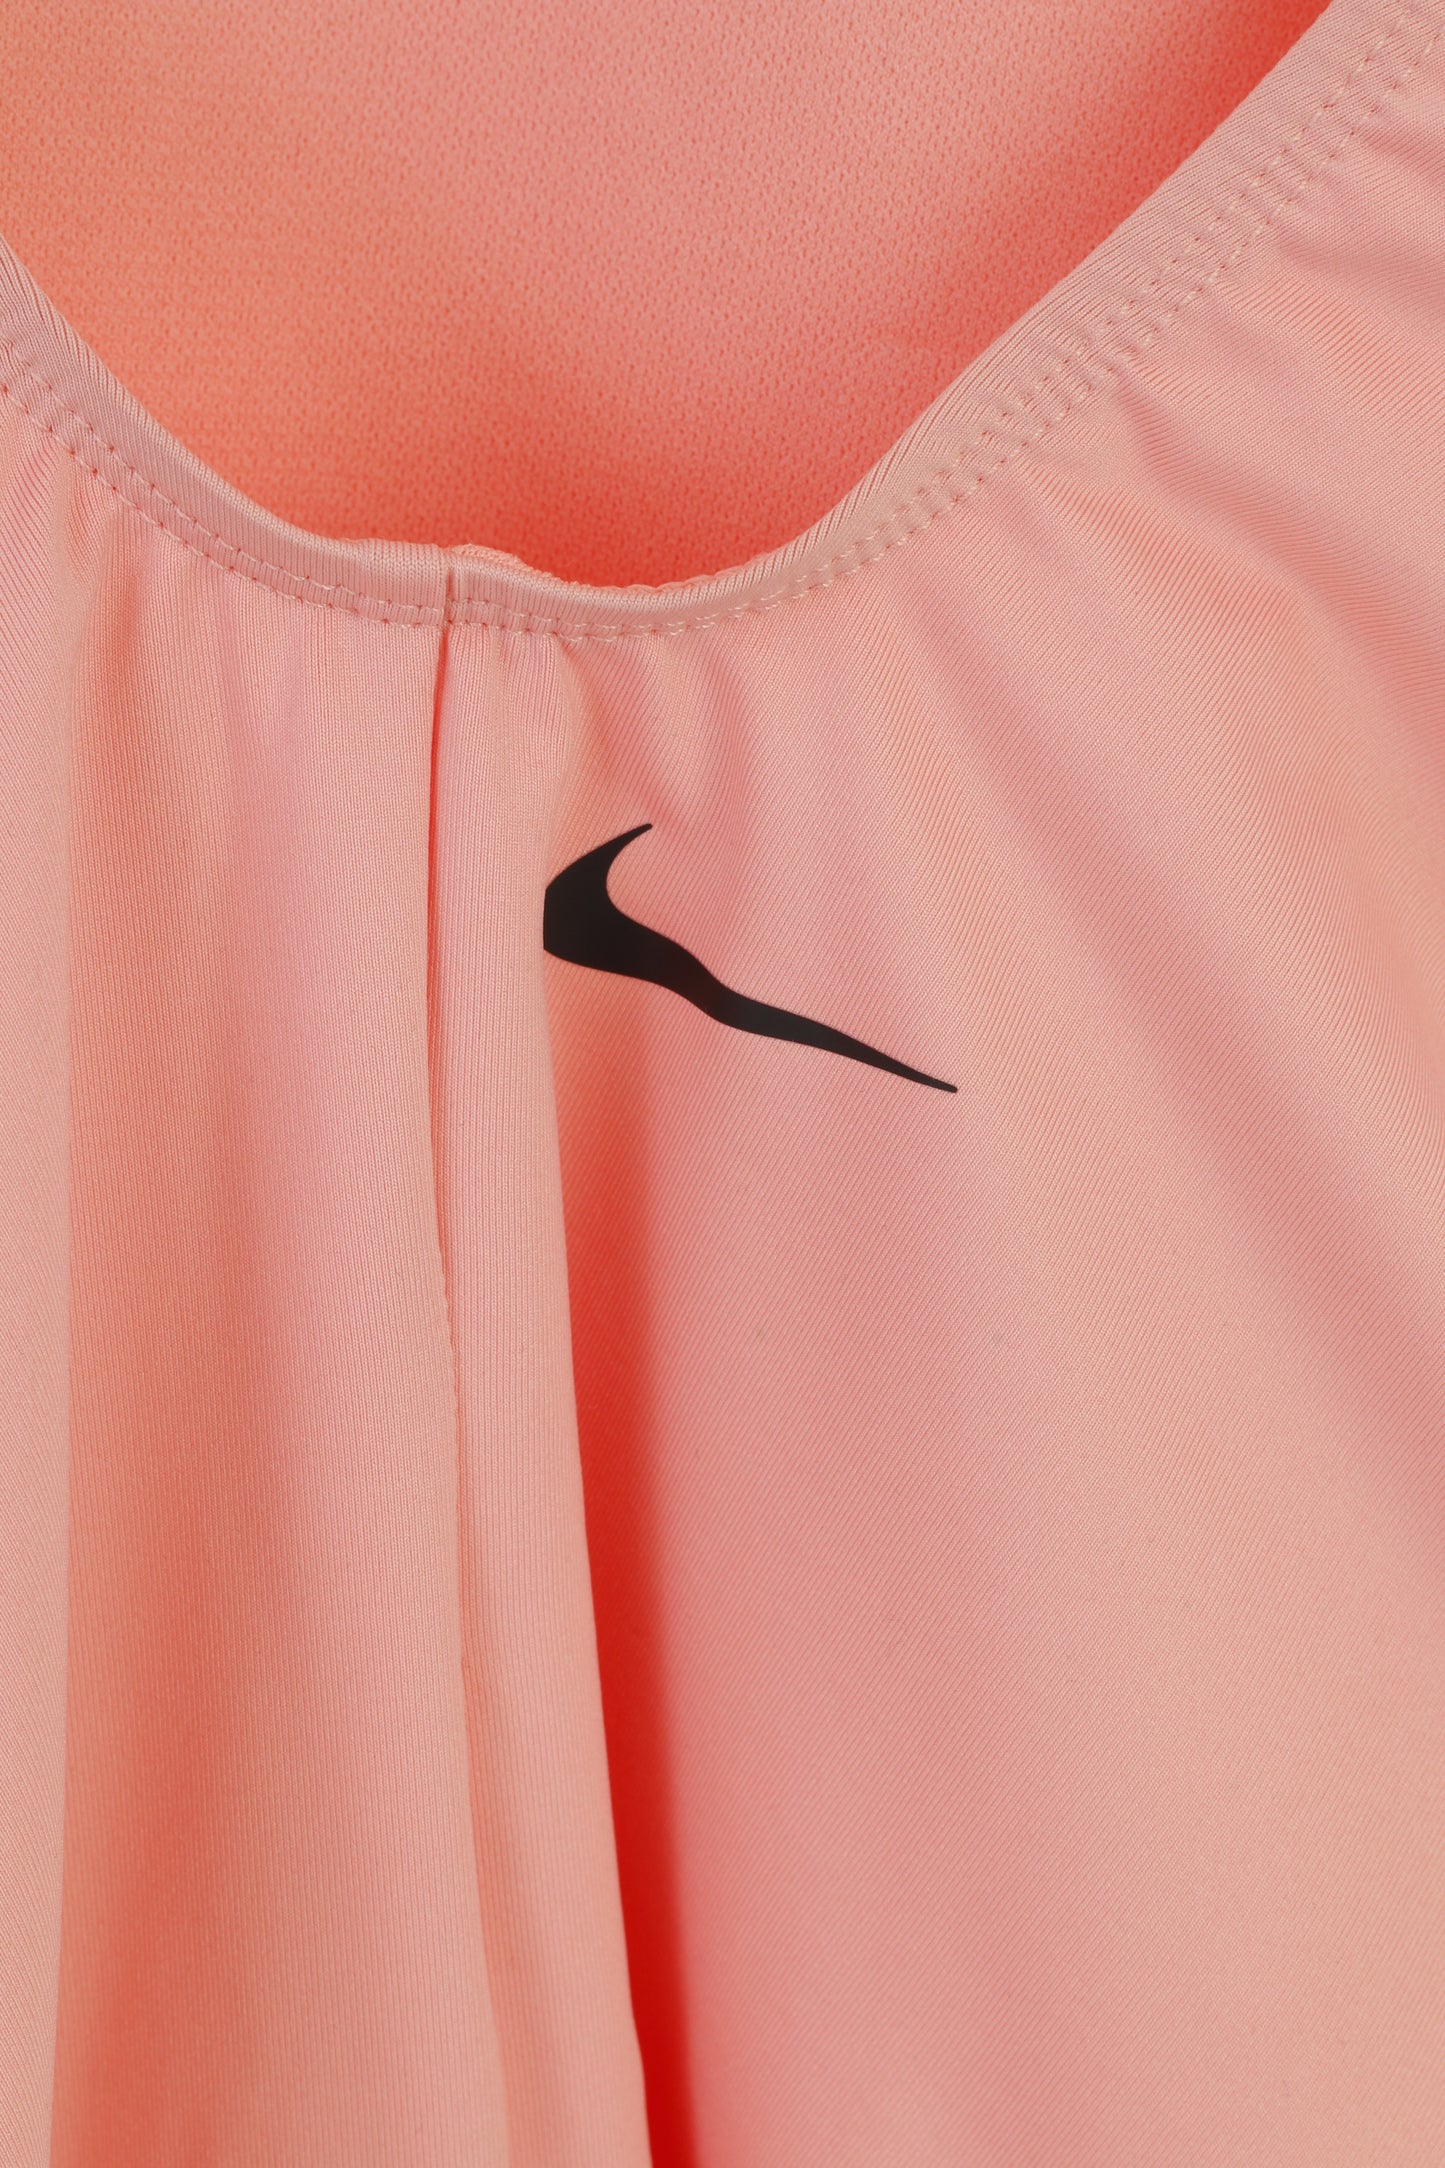 NUOVI costumi da bagno Nike Donna L rosa, impermeabili, elastici, sportivi, maniche da nuoto, top intero